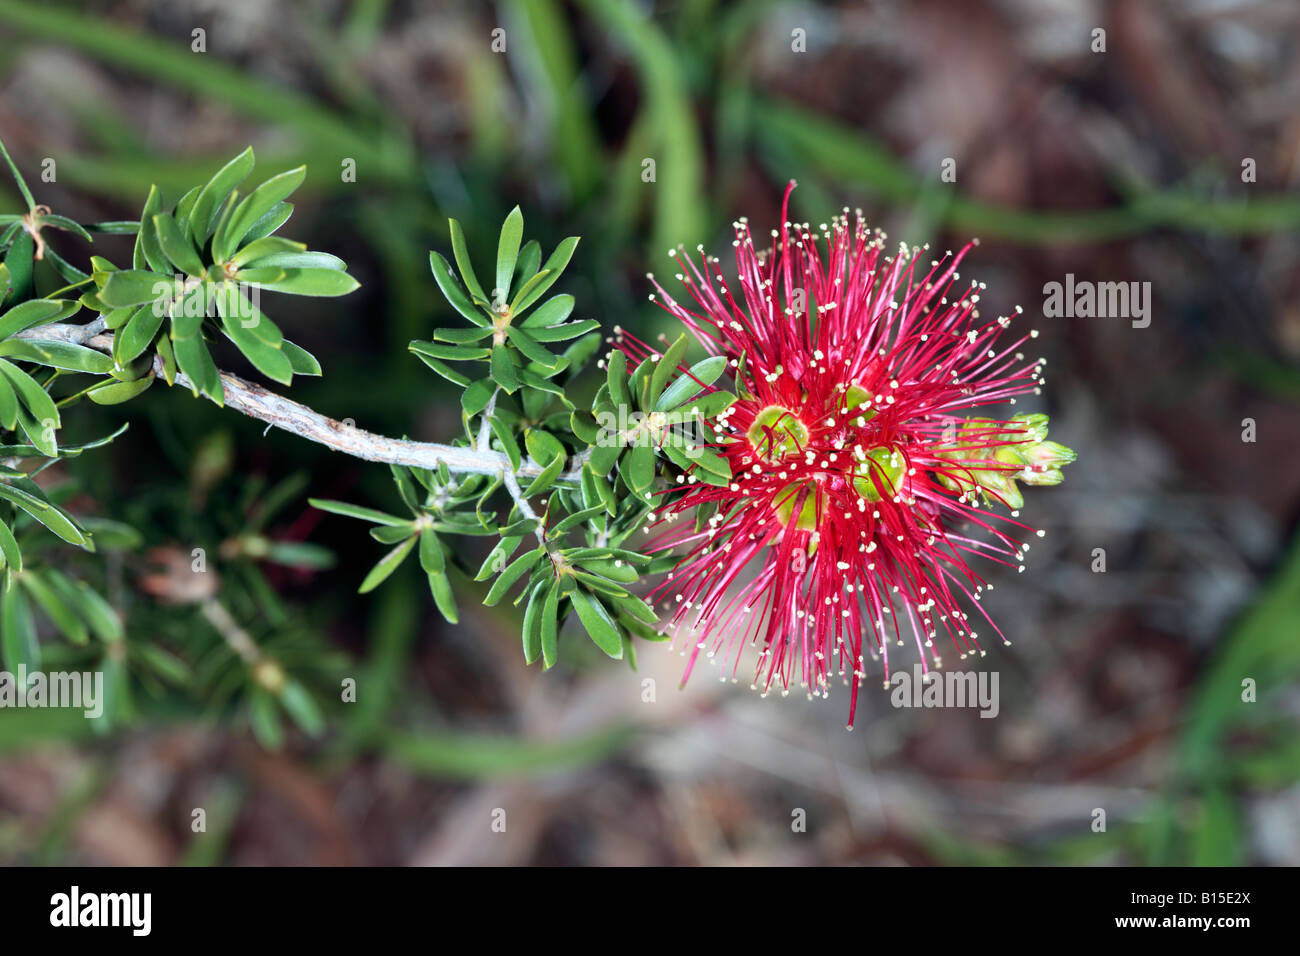 Melaleuca Flower-Family Myrtaceae Stock Photo